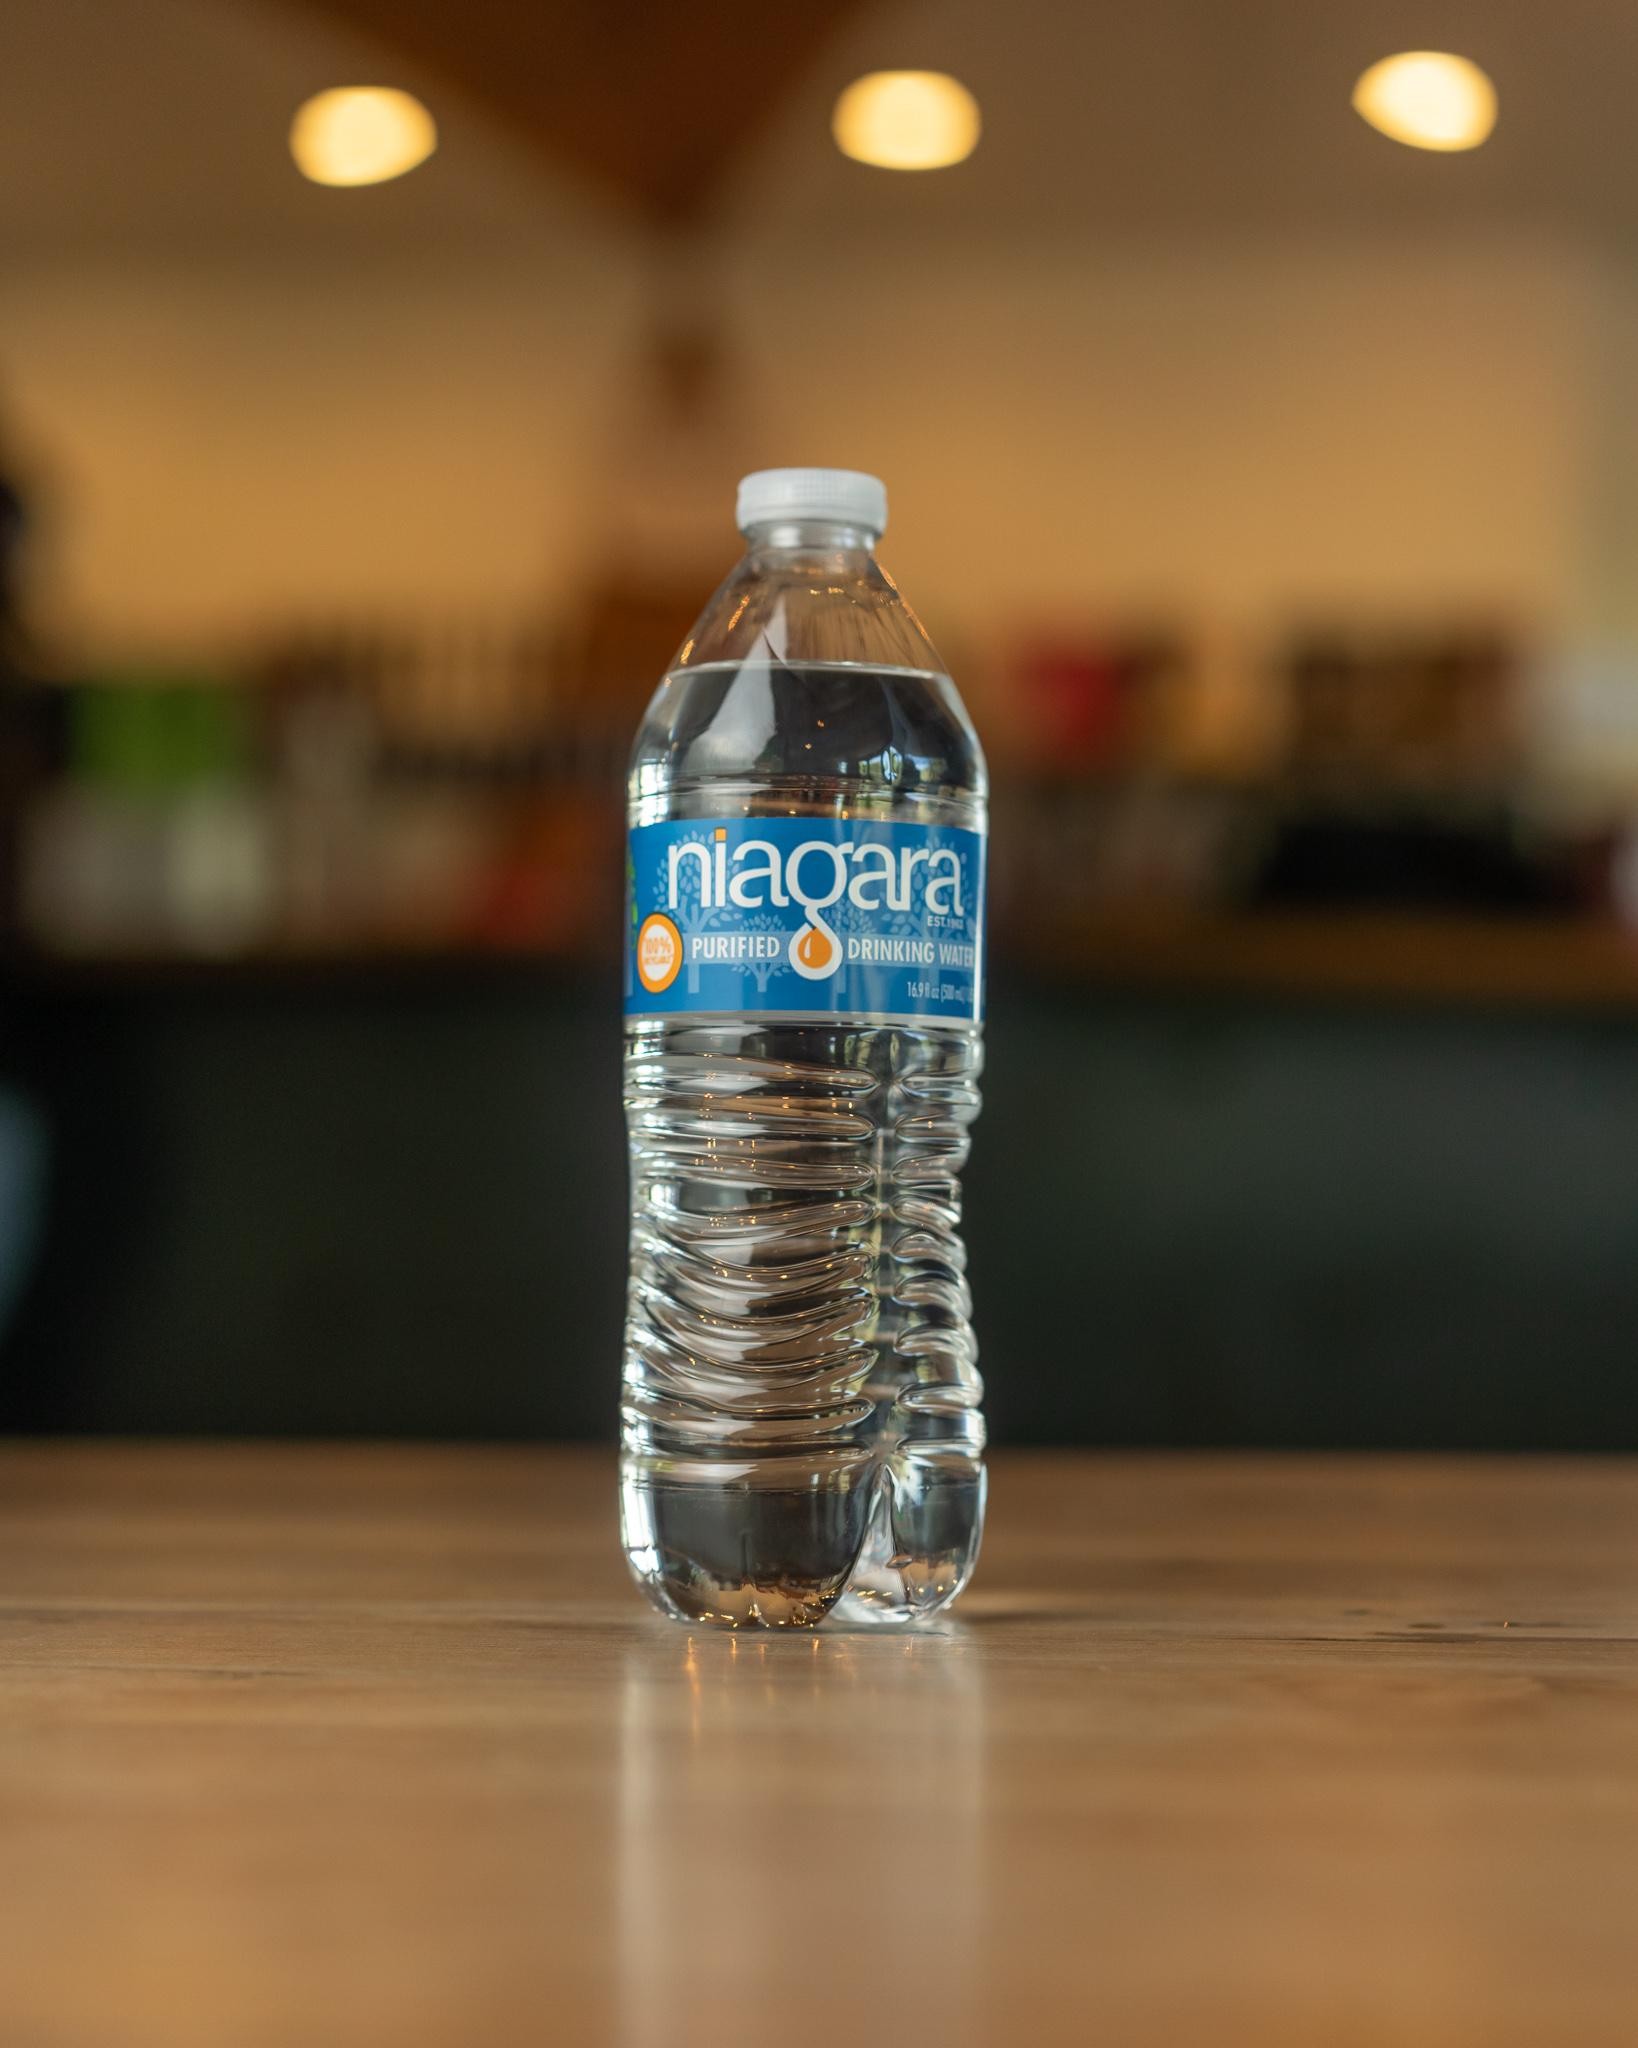 Water Bottles